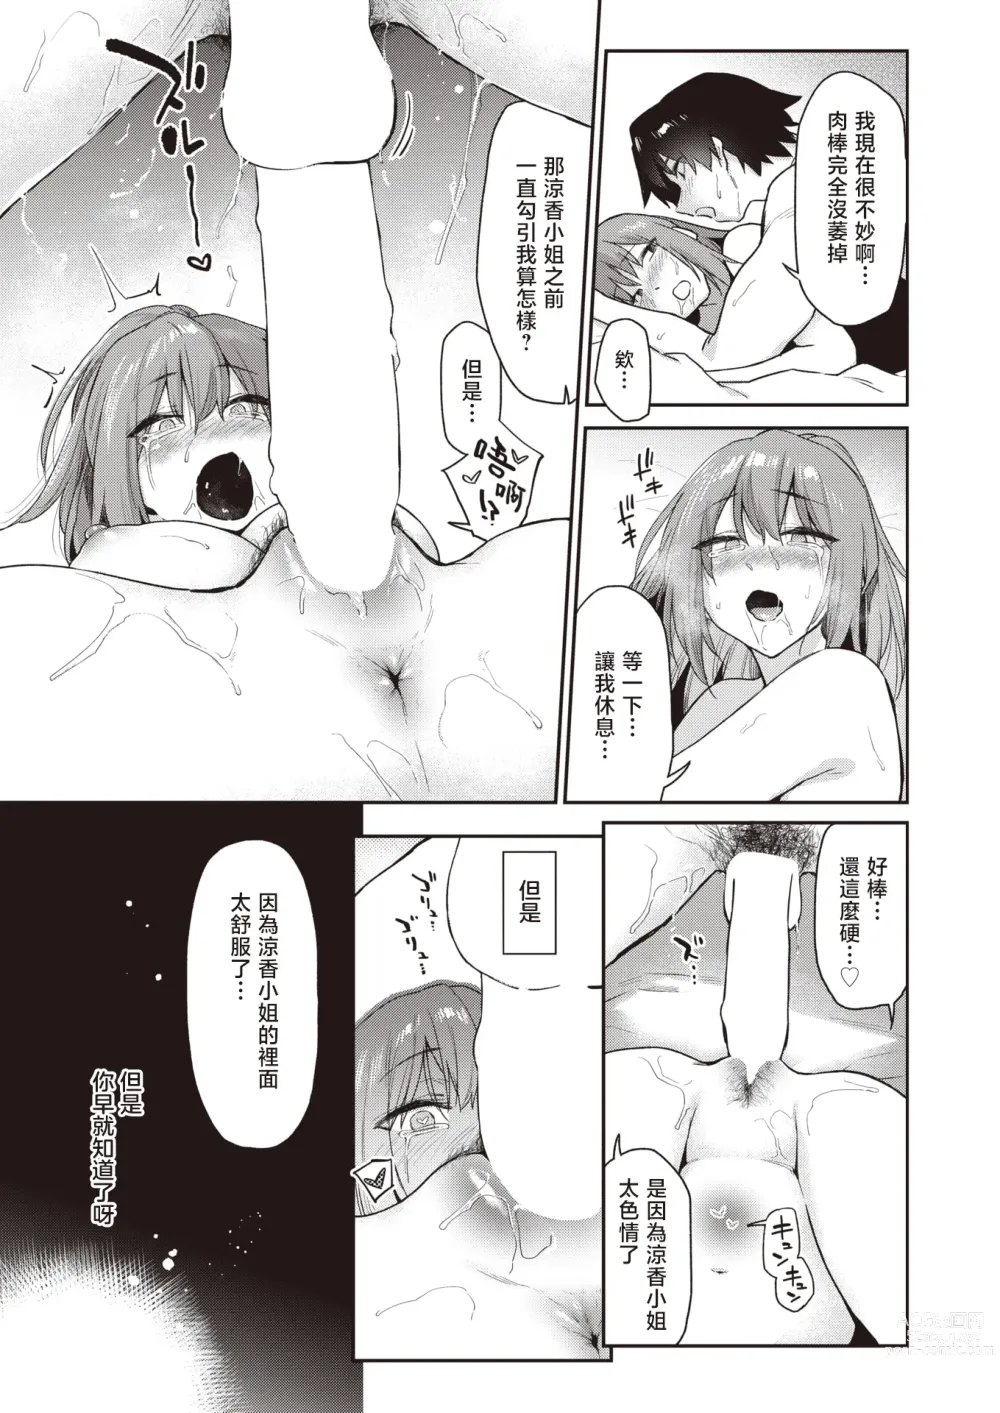 Page 24 of manga 绕道#2